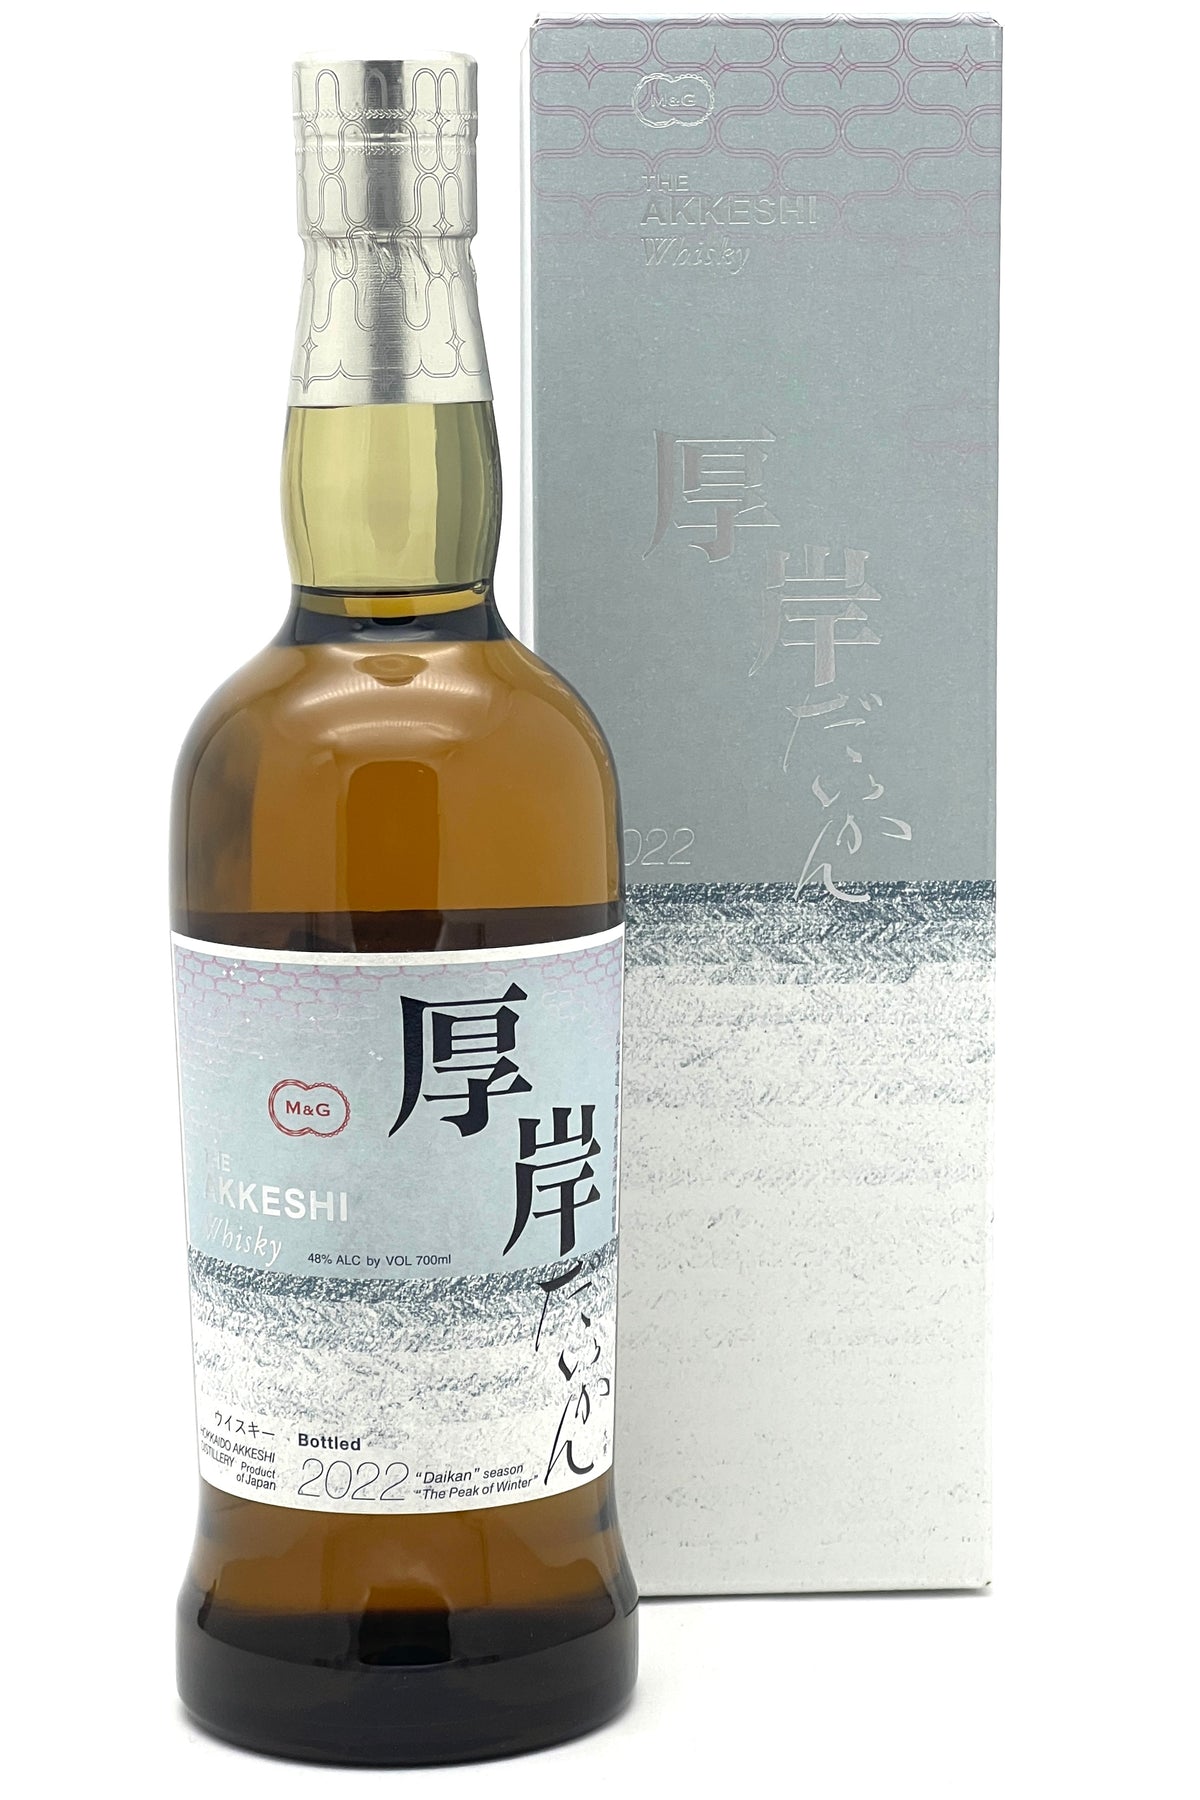 Akkeshi Daiken The Peak of Winter 2022 Limited Release Single Malt Japanese Whisky